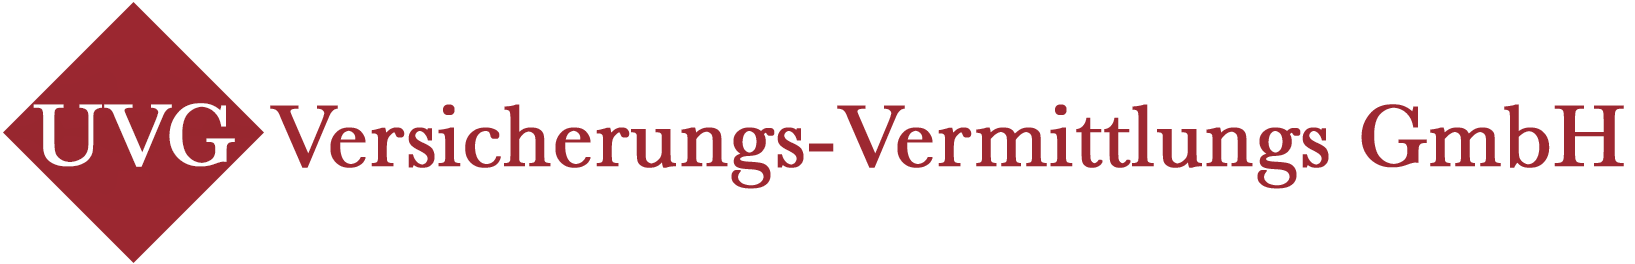 UVG -Versicherungs-Vermittler GmbH